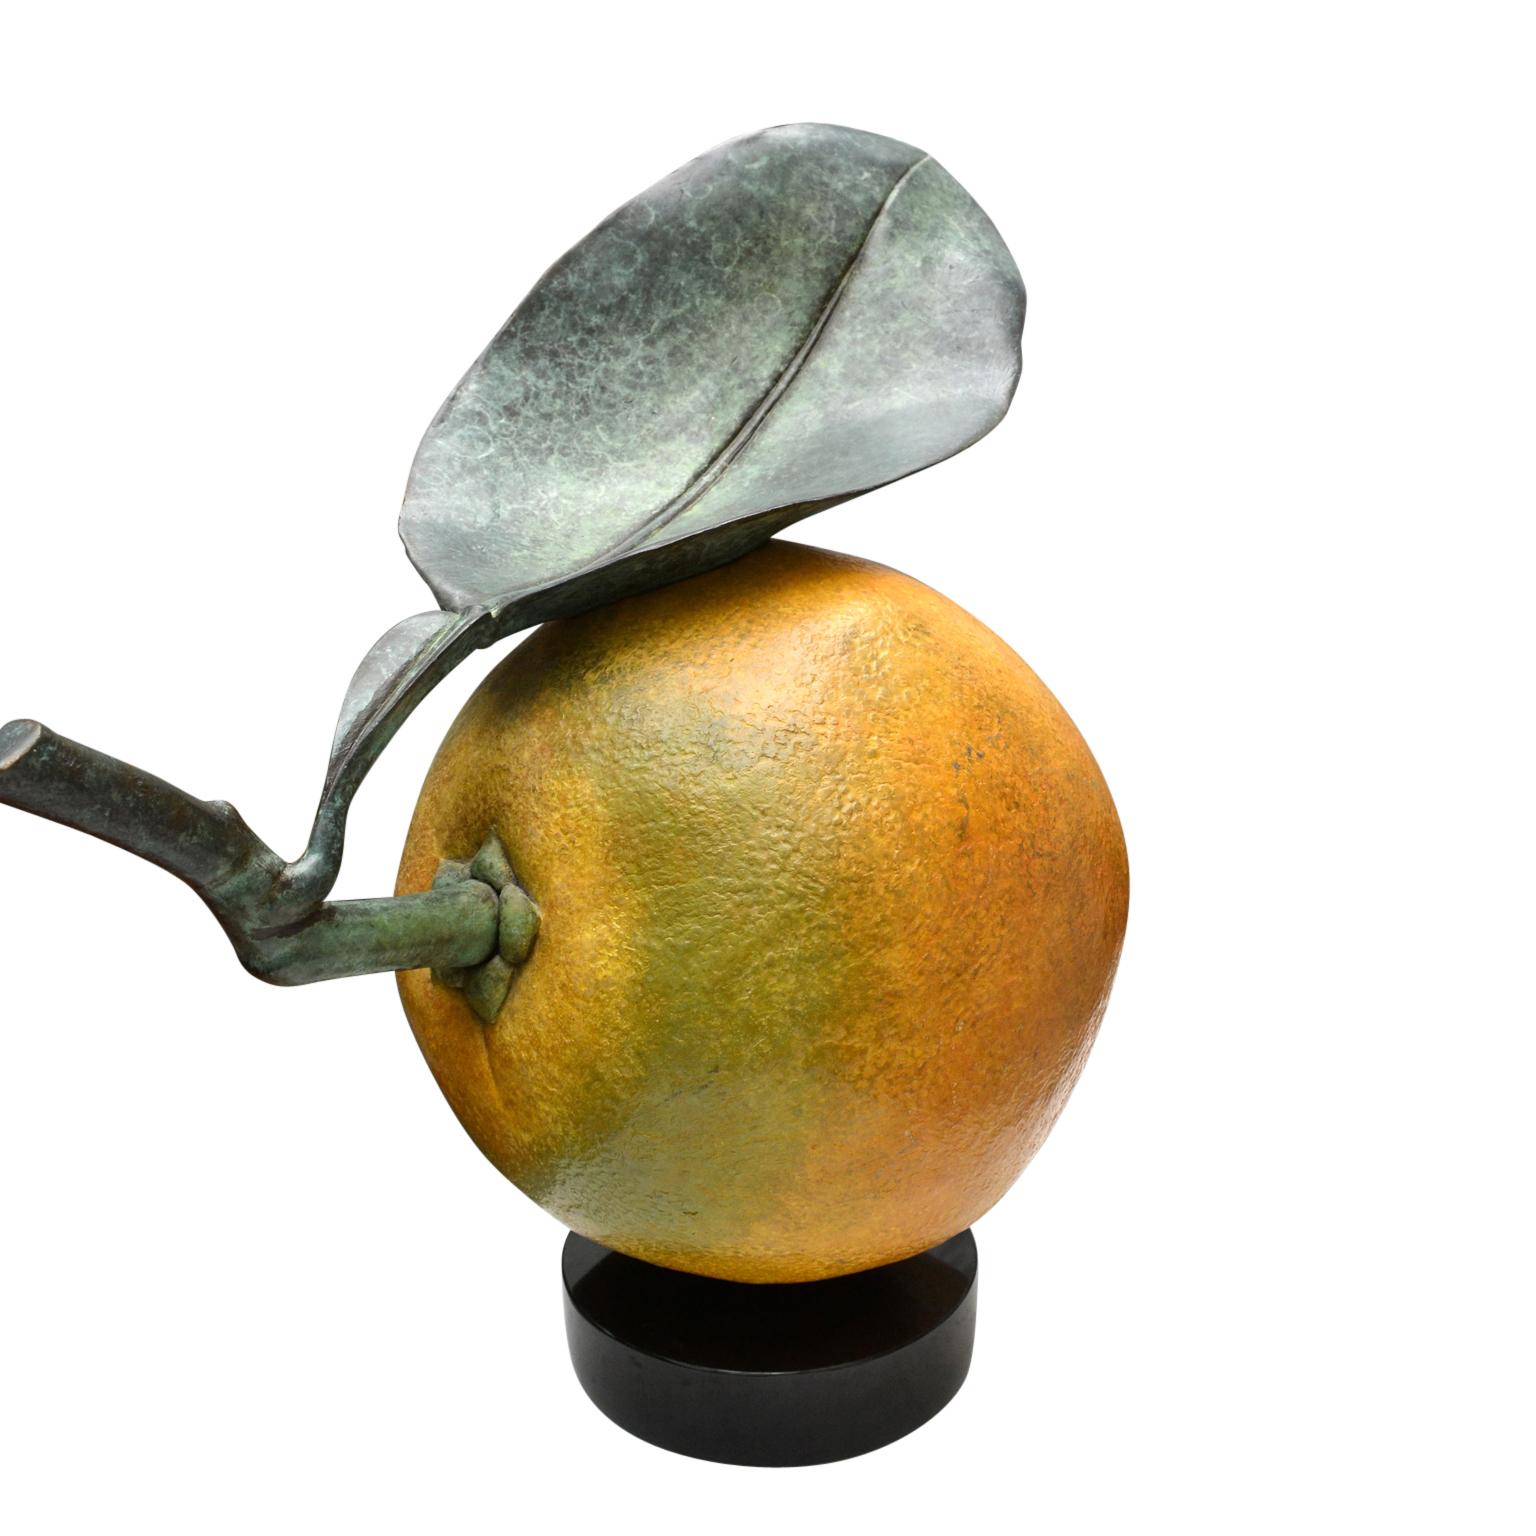 American Bronze Navel Orange by Luis Montoya and Leslie Ortiz Known as Popliteo